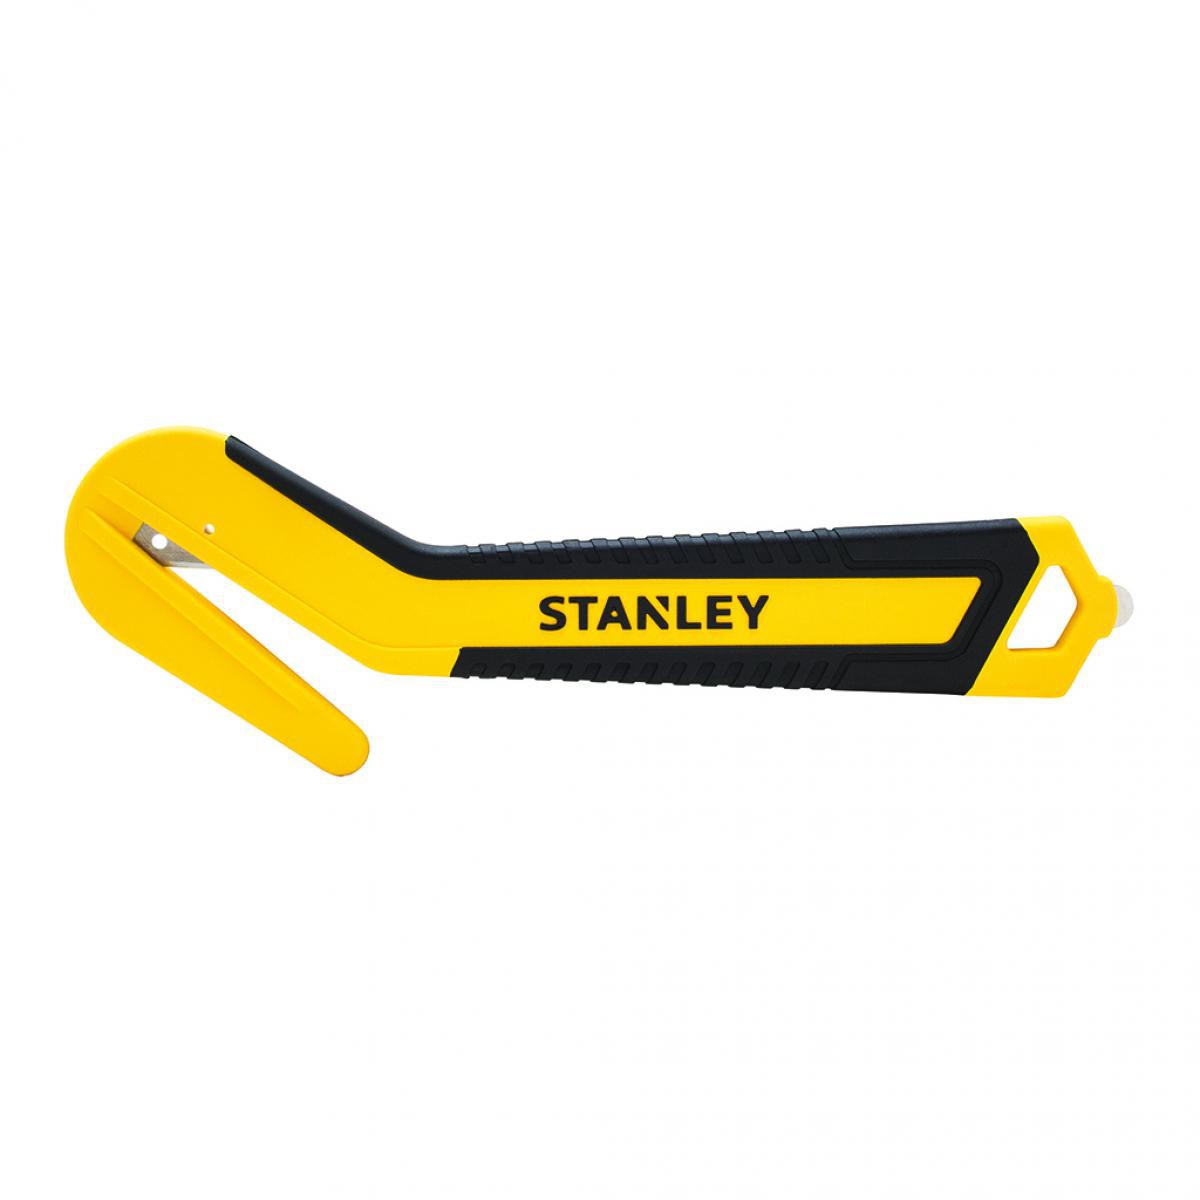 Stanley - Stanley - Sachet de 10 pièces Couteaux bimatière à lame unique encastrée bout arrondi - Outils de coupe